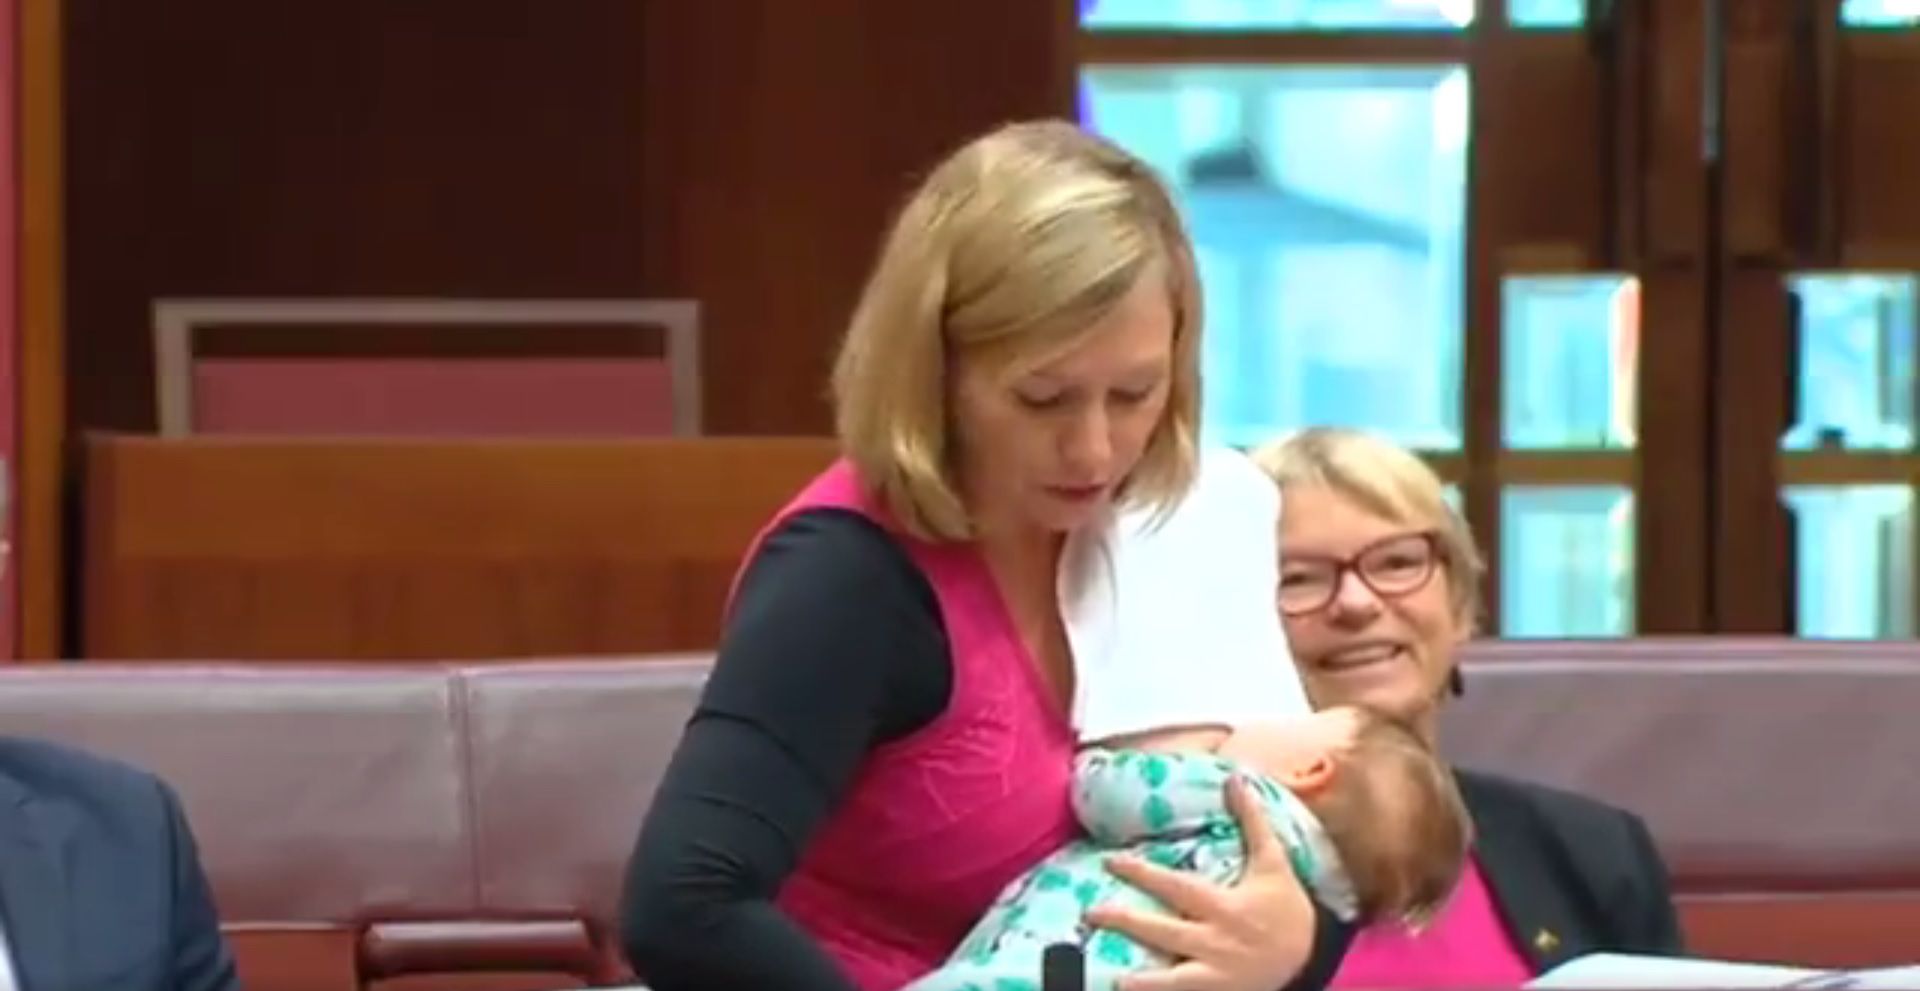 Zgłosiła wniosek, karmiąc dziecko. Pani senator dała przykład